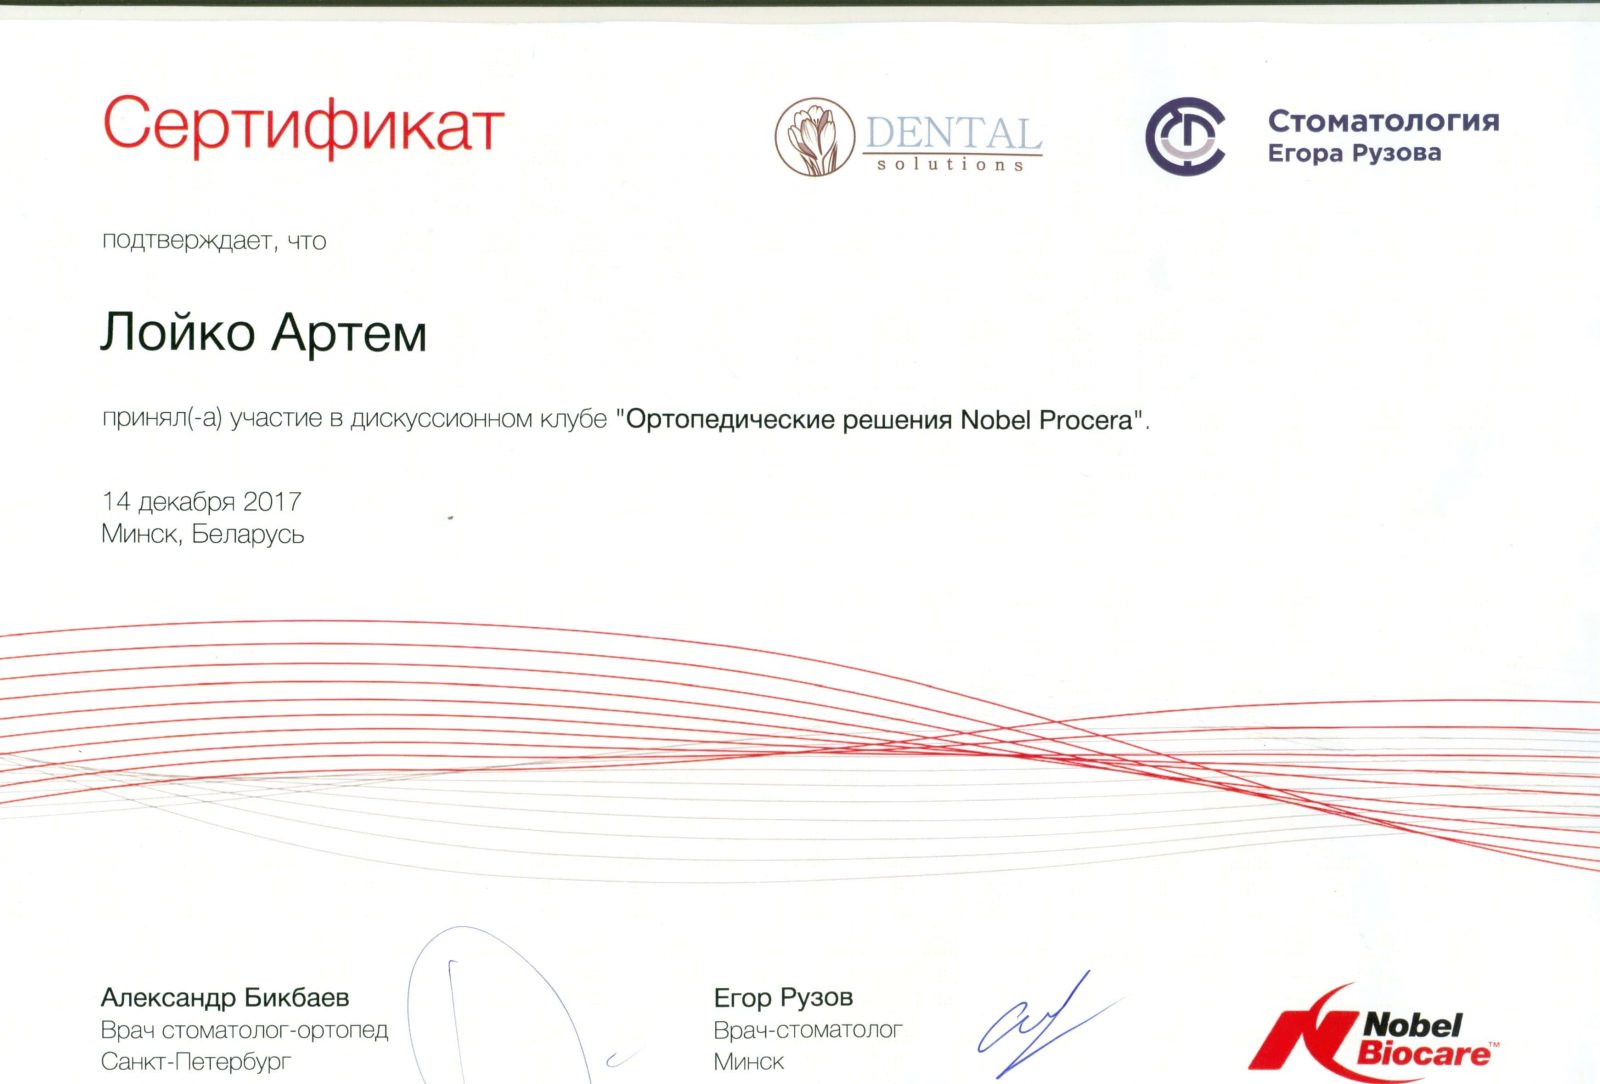 Certyfikat Nobel Biocare został przyznany Artemowi Loiko za udział w klubie dyskusyjnym. Rozwiązania ortopedyczne Nobel Procera.